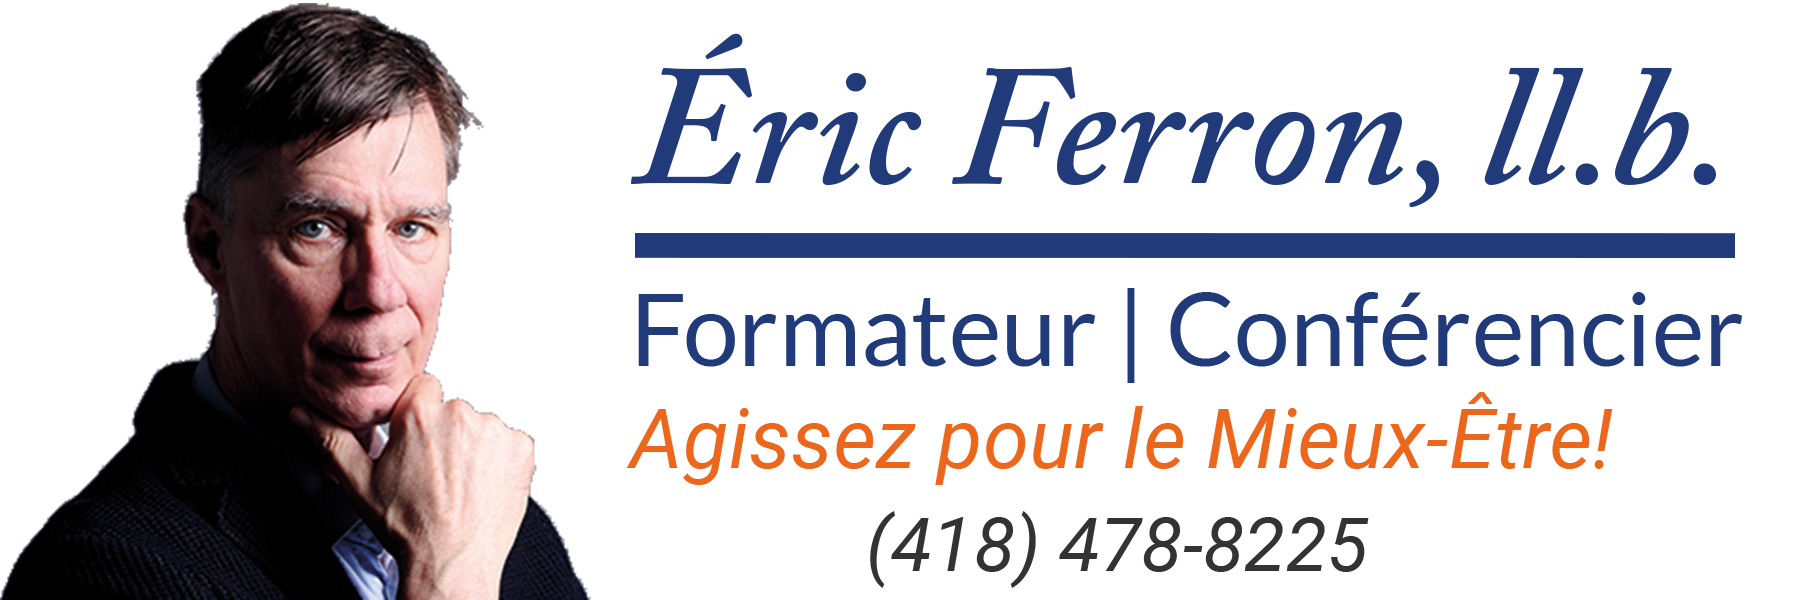 Eric Ferron, ll.b. | Formateur | Conférencier